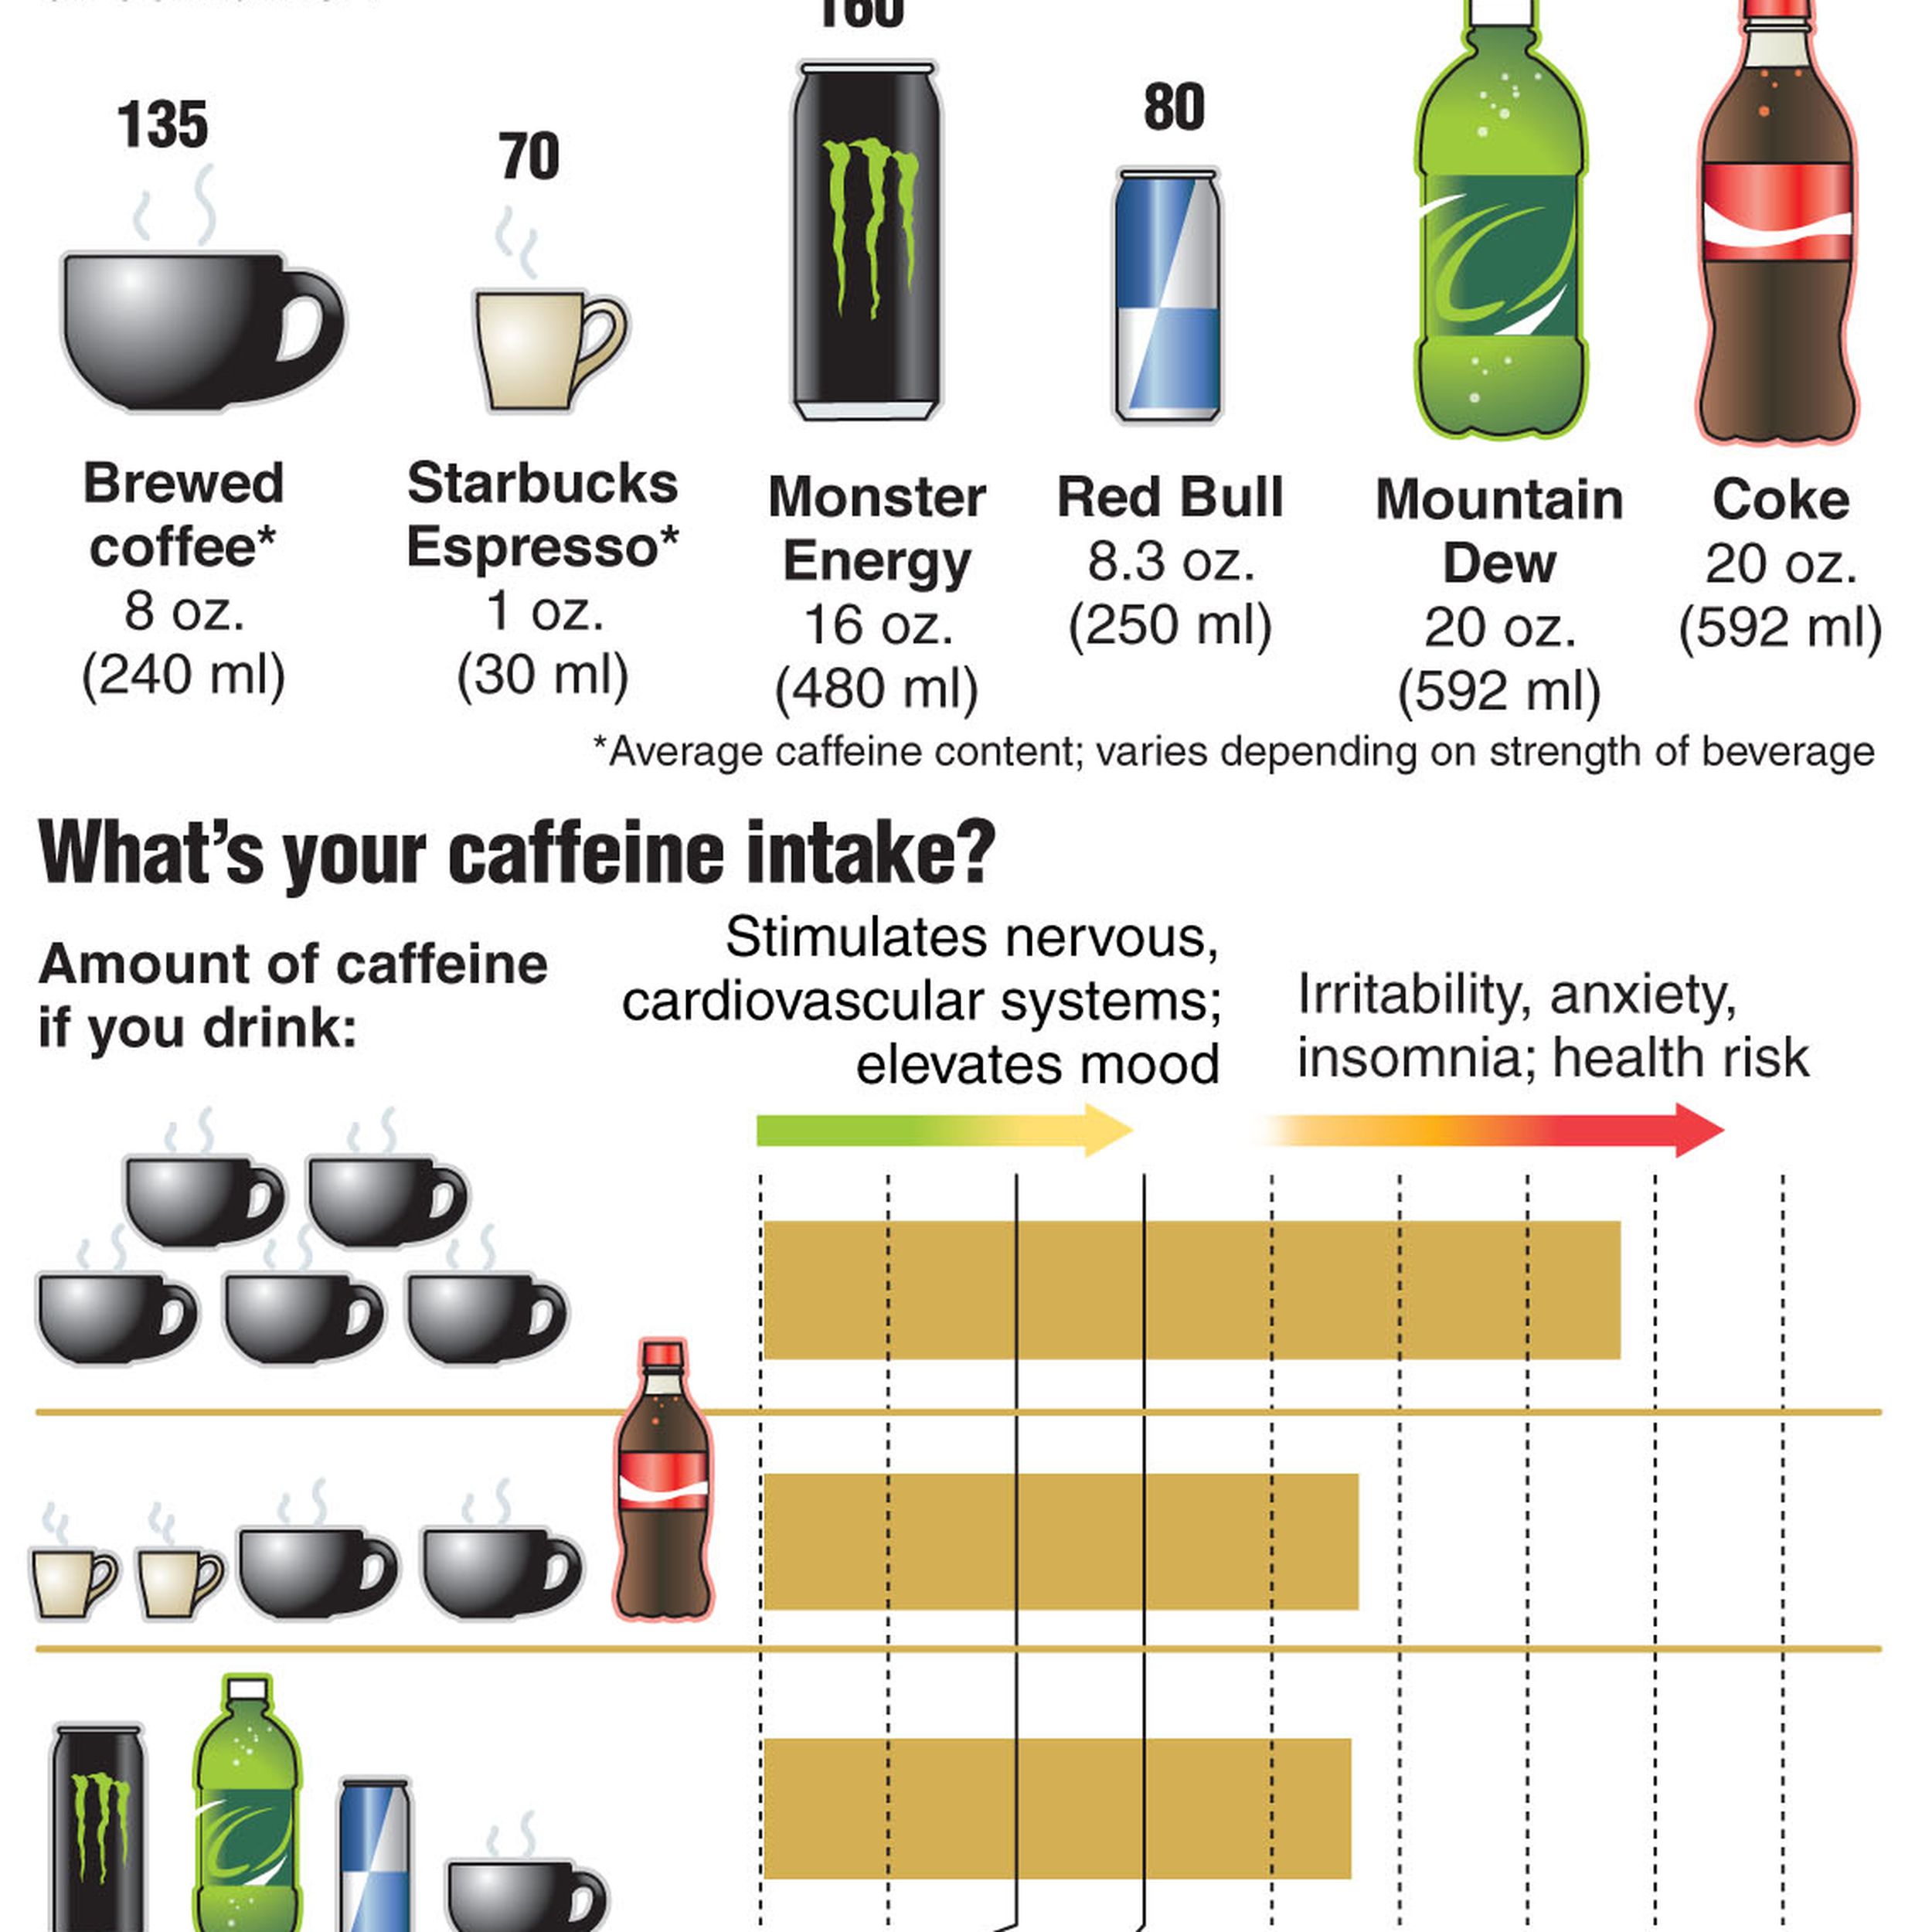 Энергетик содержание кофеина. Содержание кофеина в Маунтин Дью. Энергетики количество кофеина. Кофеин в энергетических напитках. Содержание кофеина в redbull.